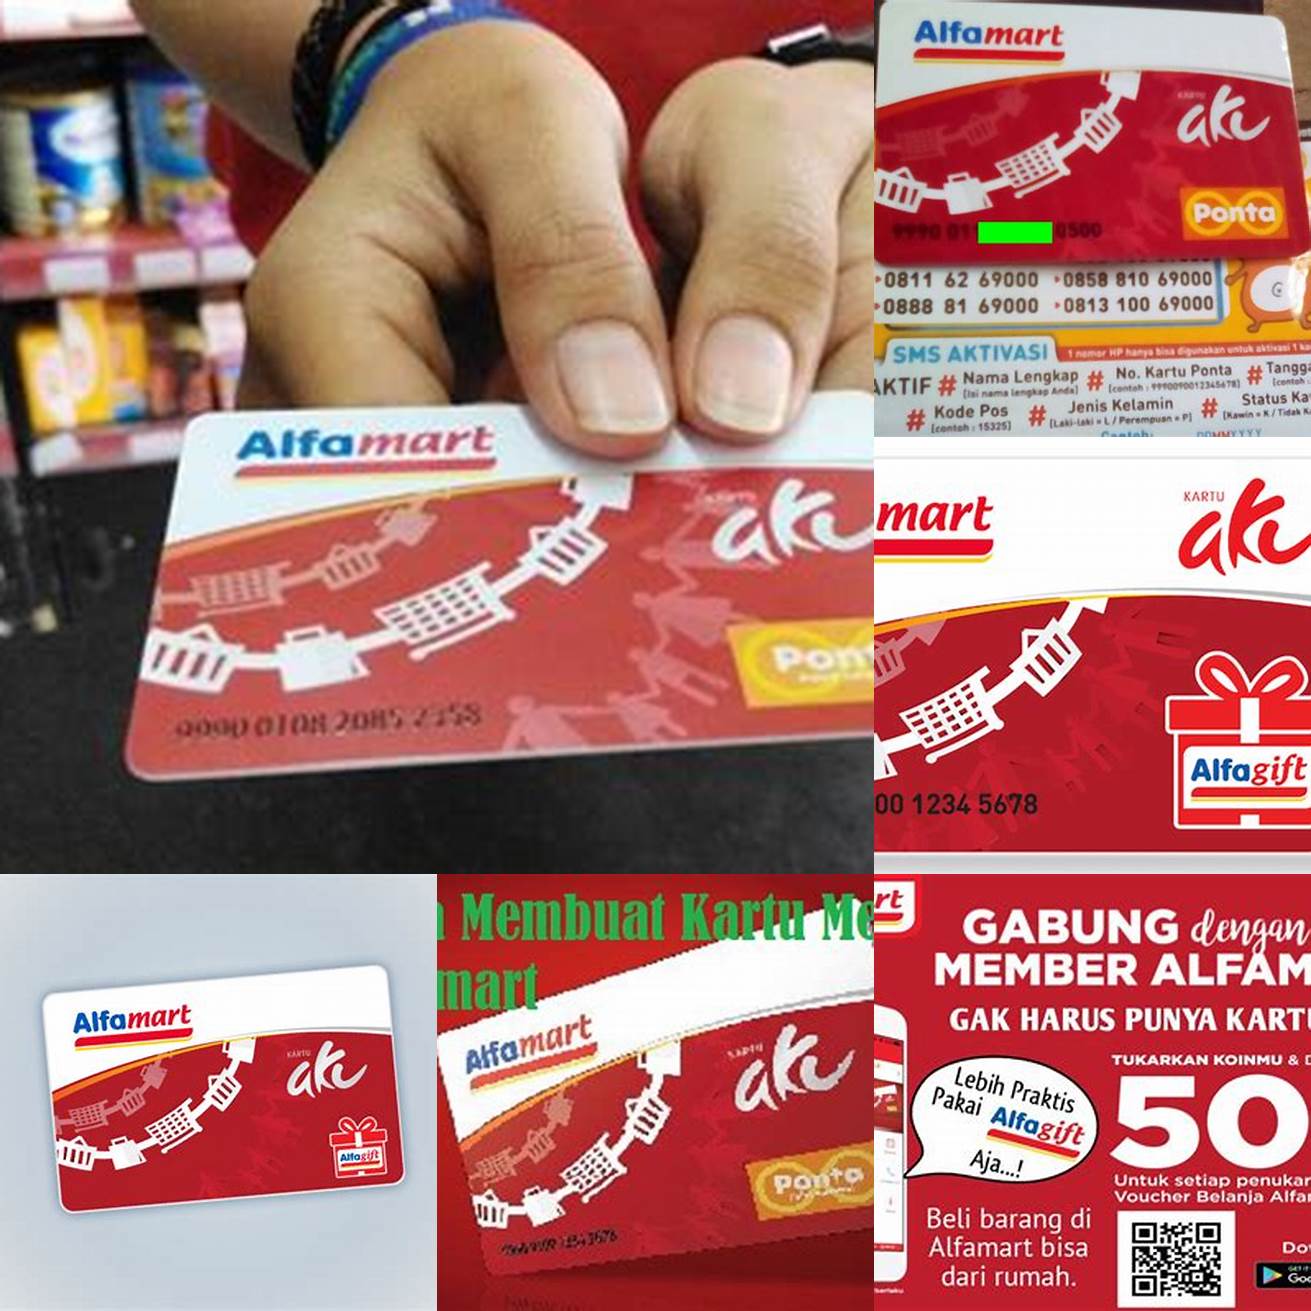 Gunakan kartu member saat berbelanja di Alfamart